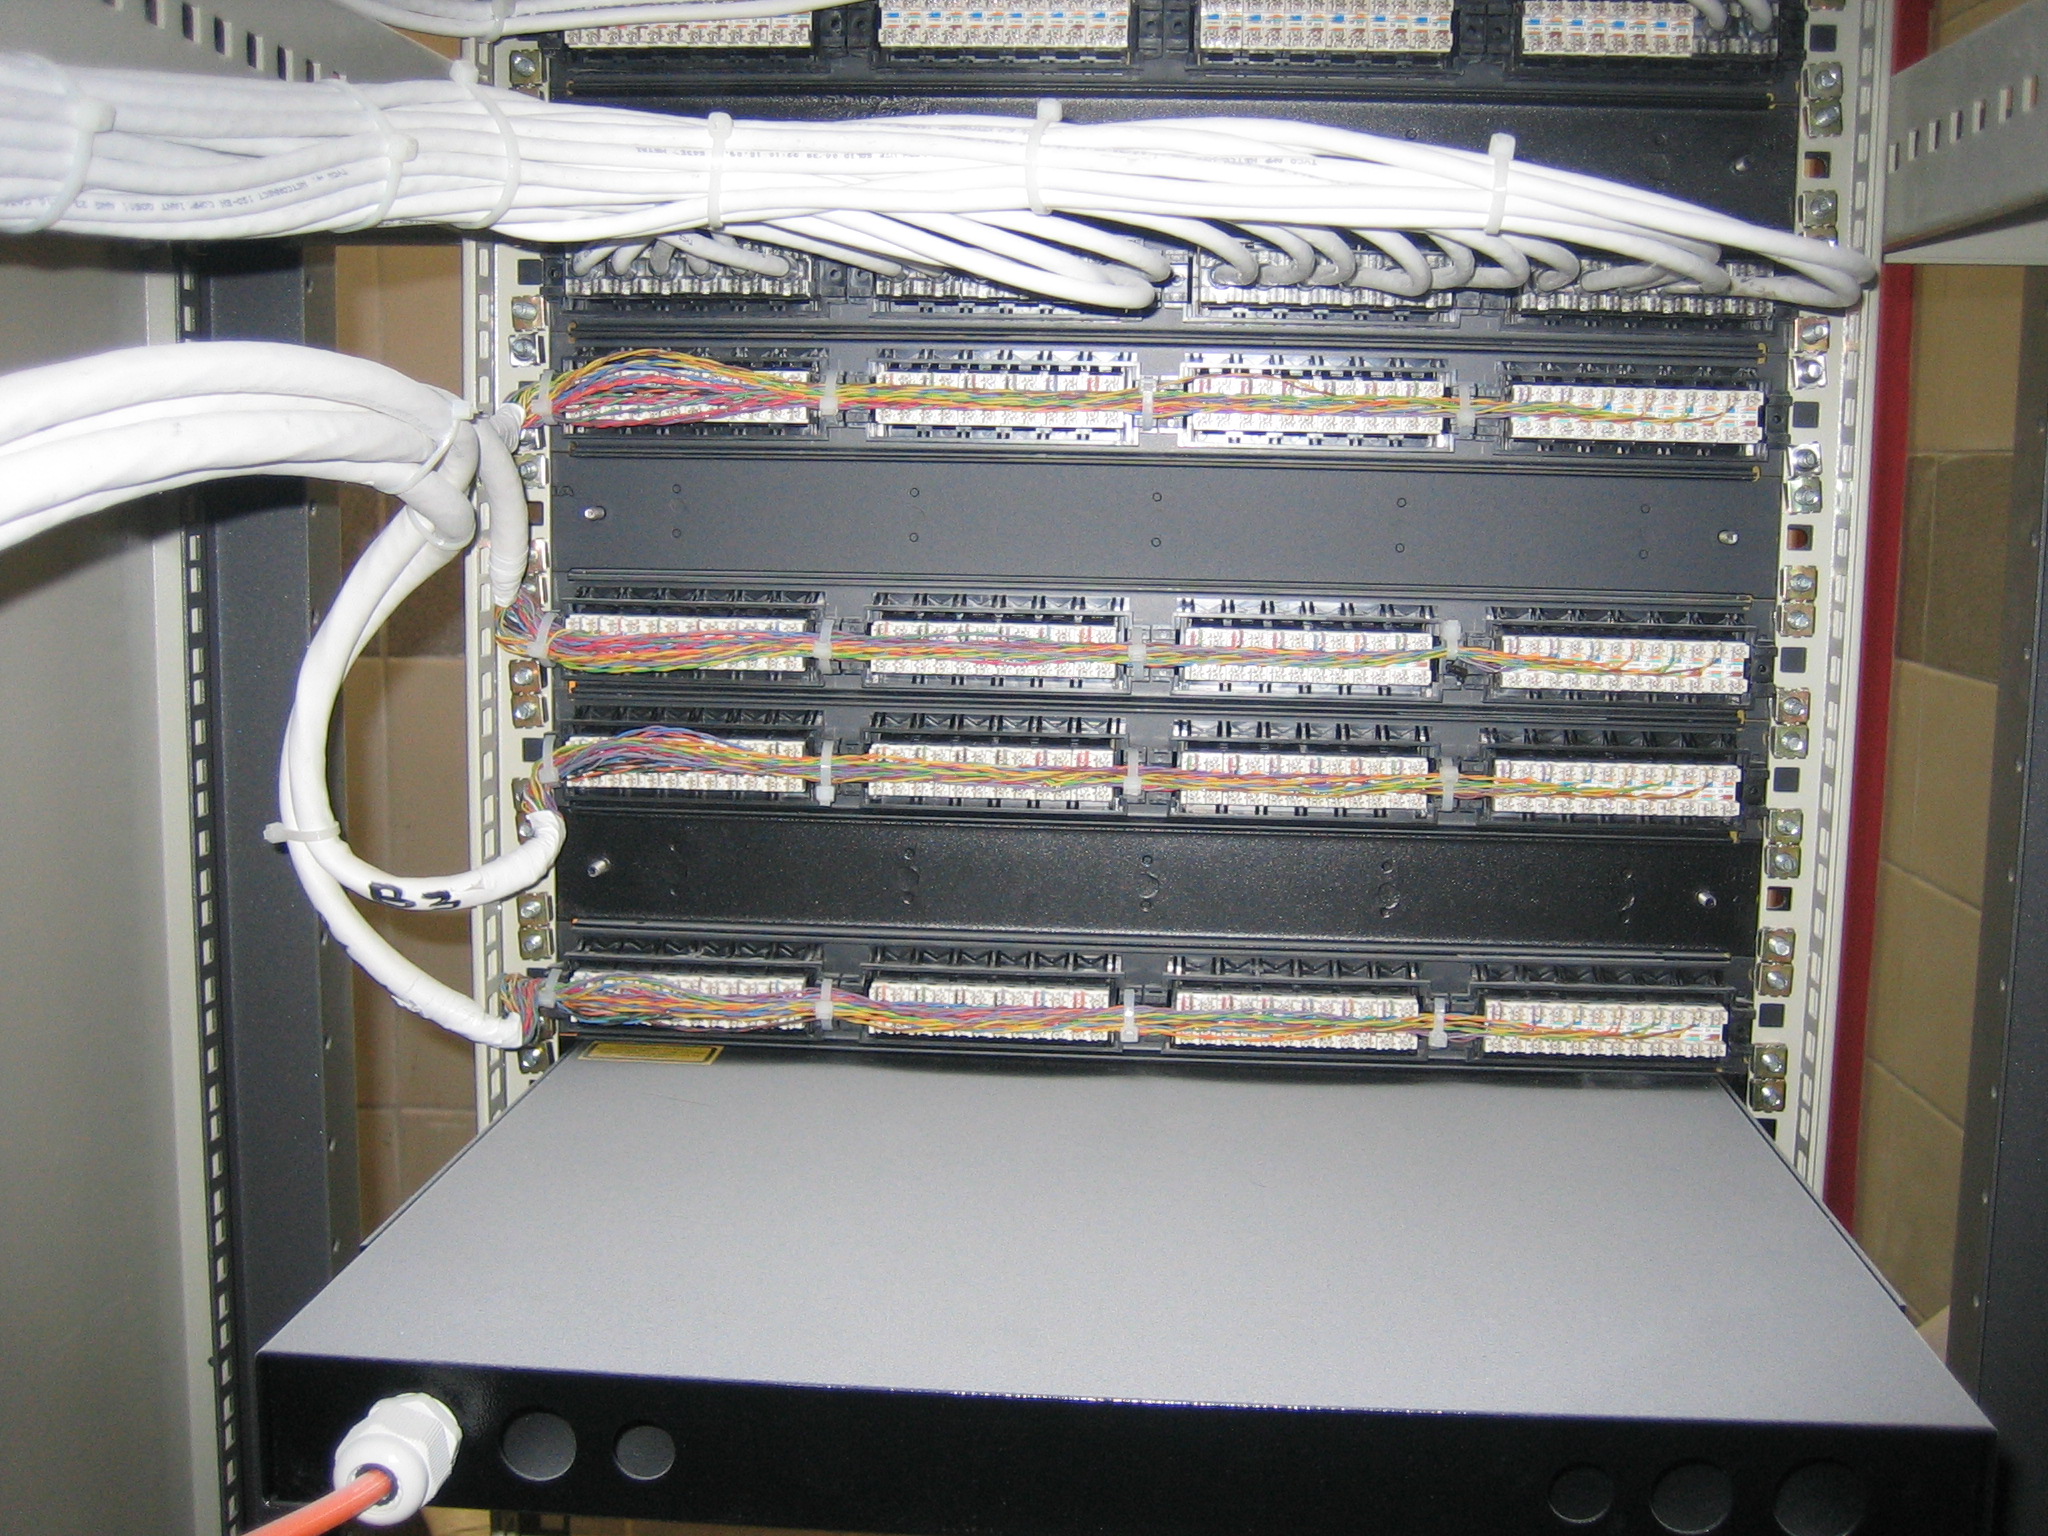 474Συστήματα Δομημένης Καλωδίωσης, με UTP, FTP, STP και Fiber Optic τεχνολογία